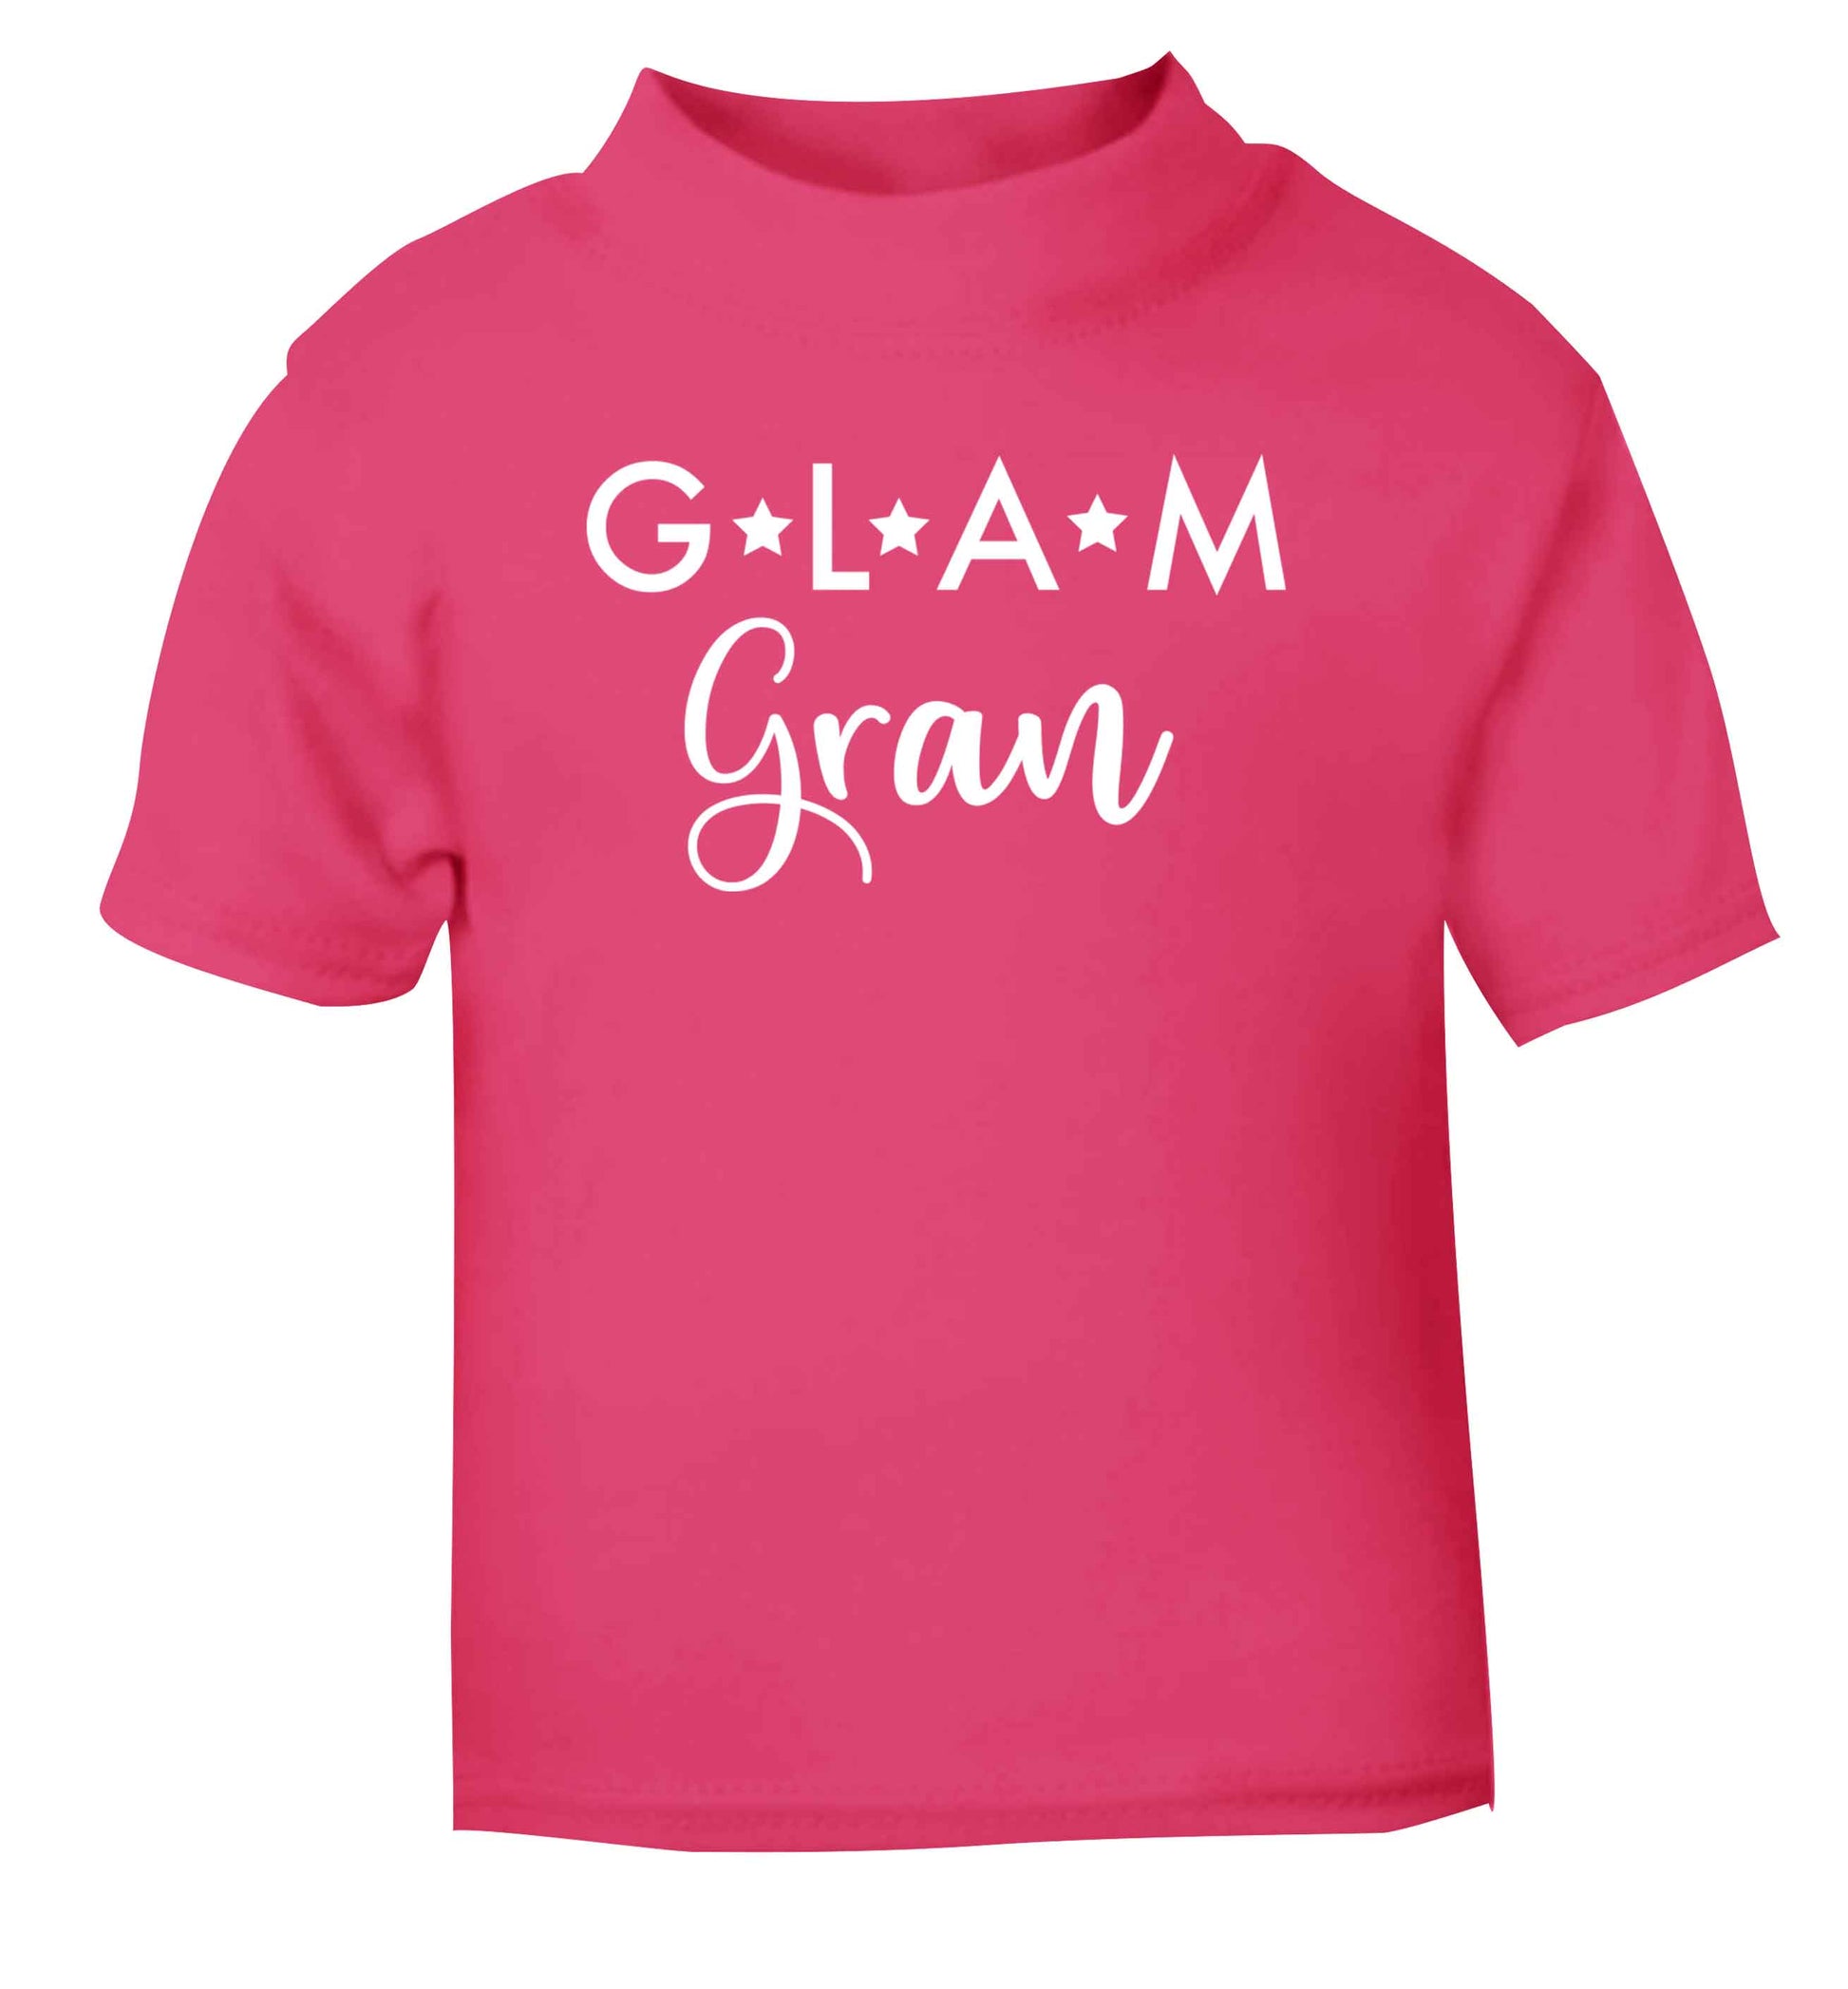 Glam Gran pink Baby Toddler Tshirt 2 Years